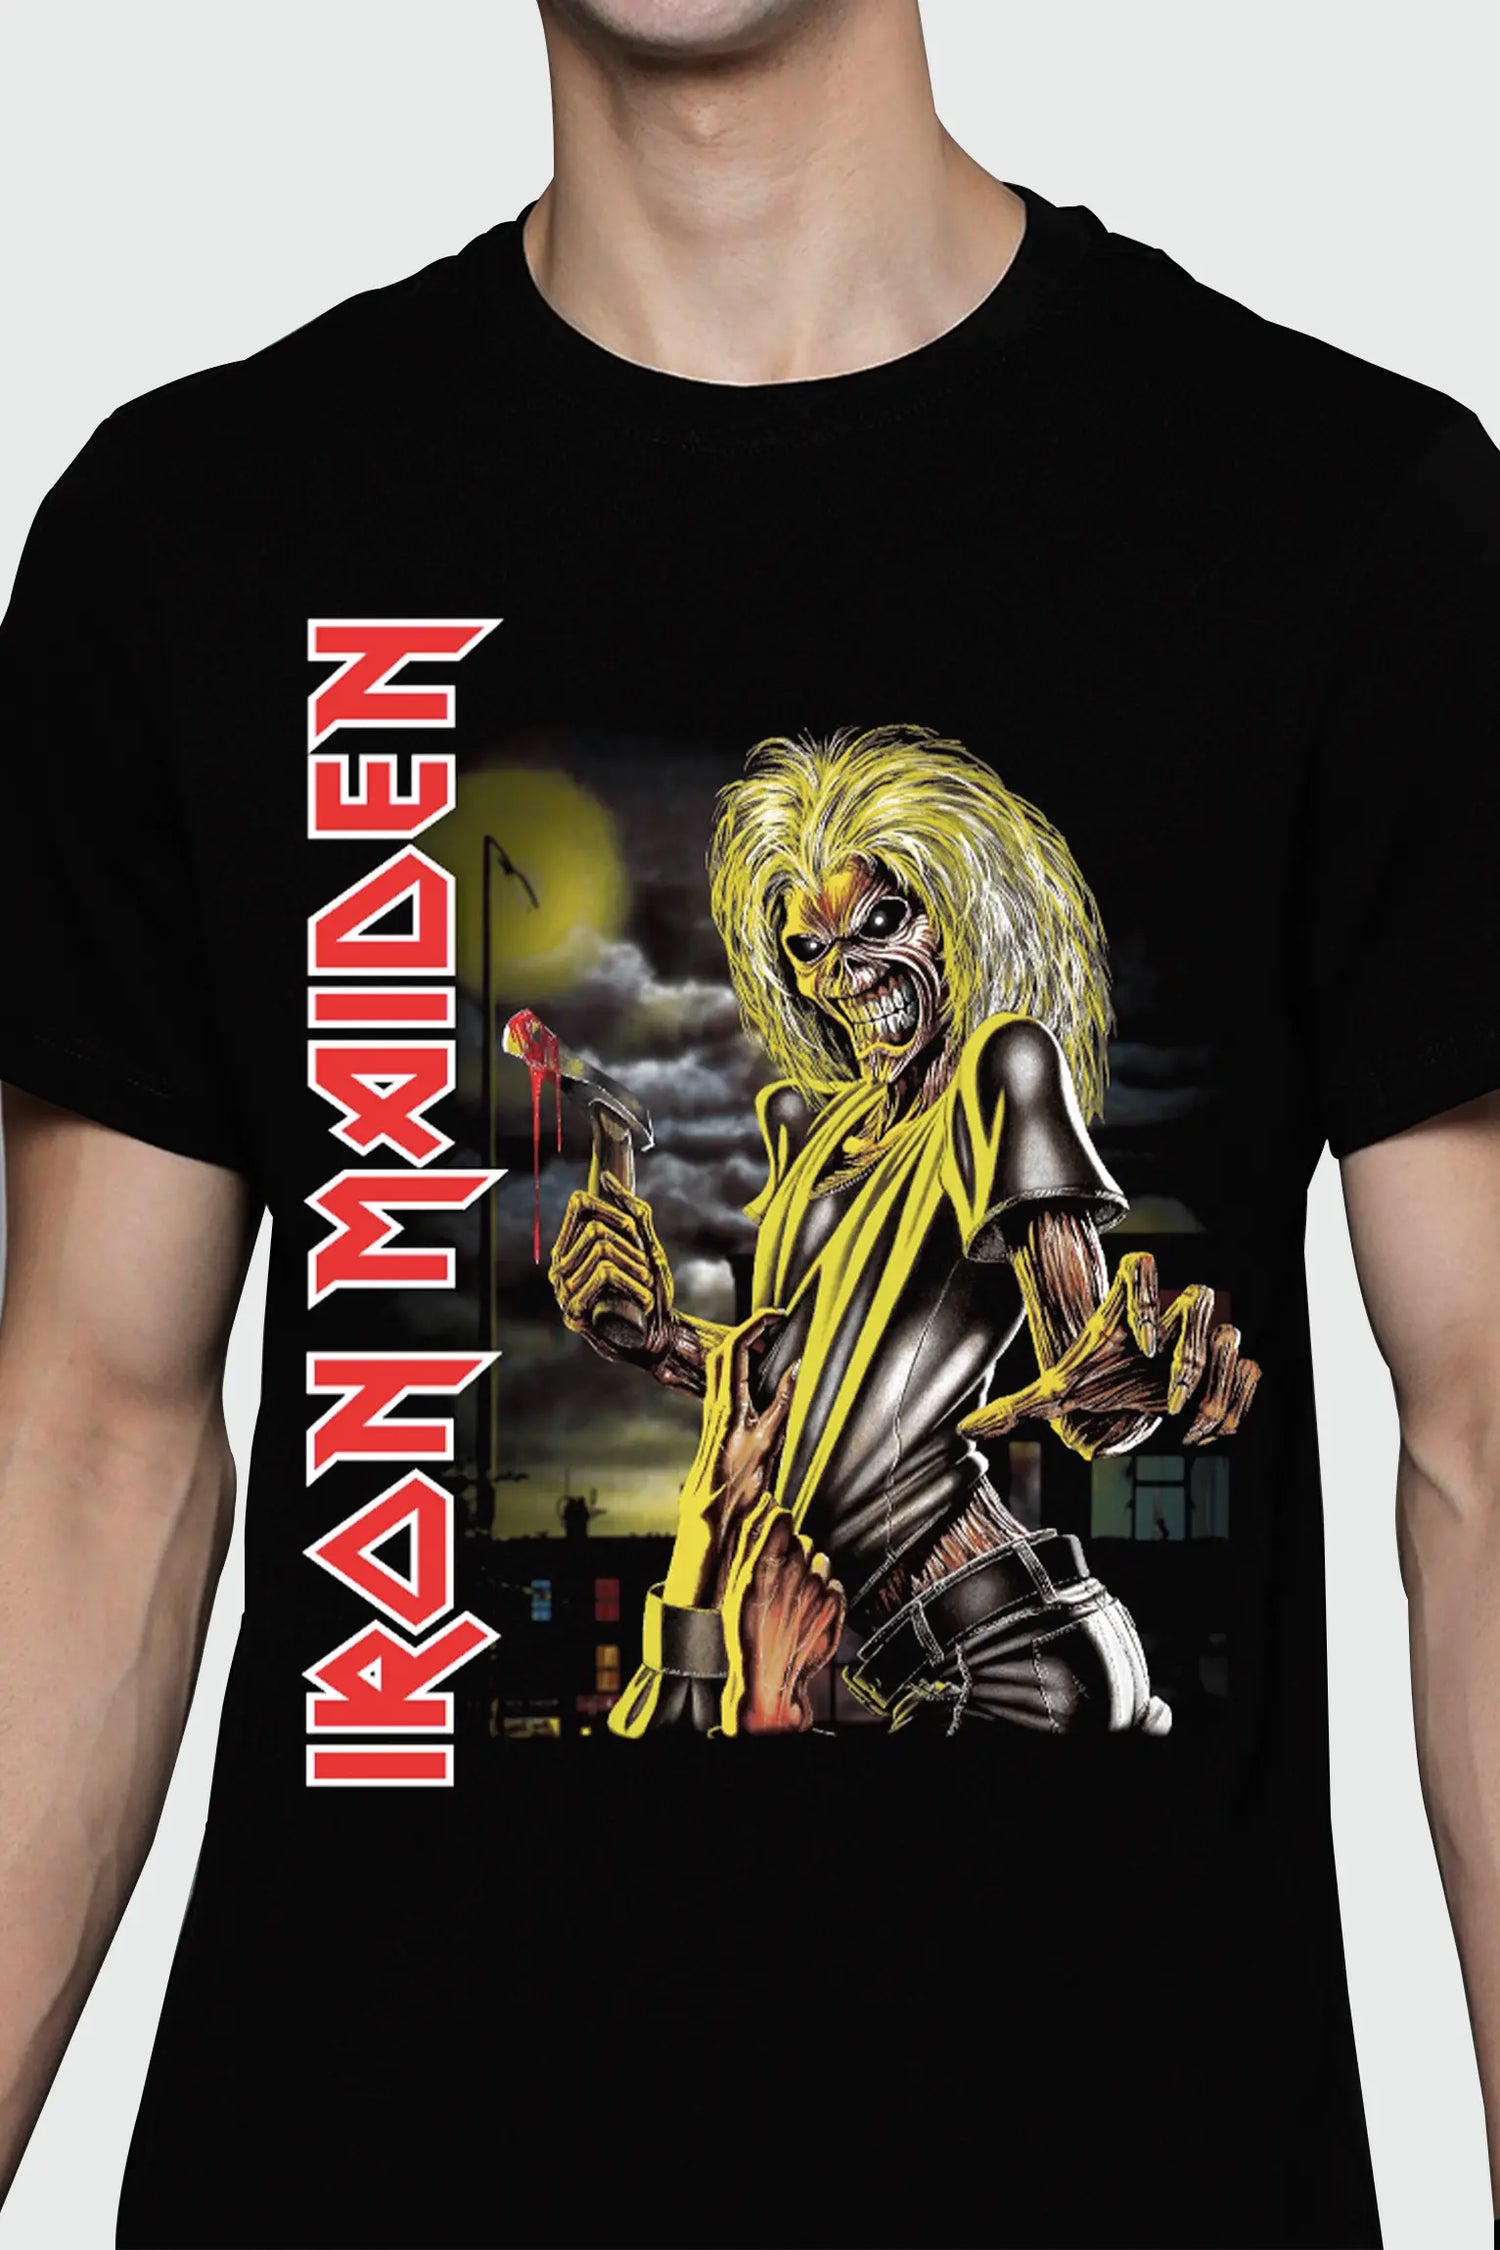 Camiseta Iron Maiden Killers